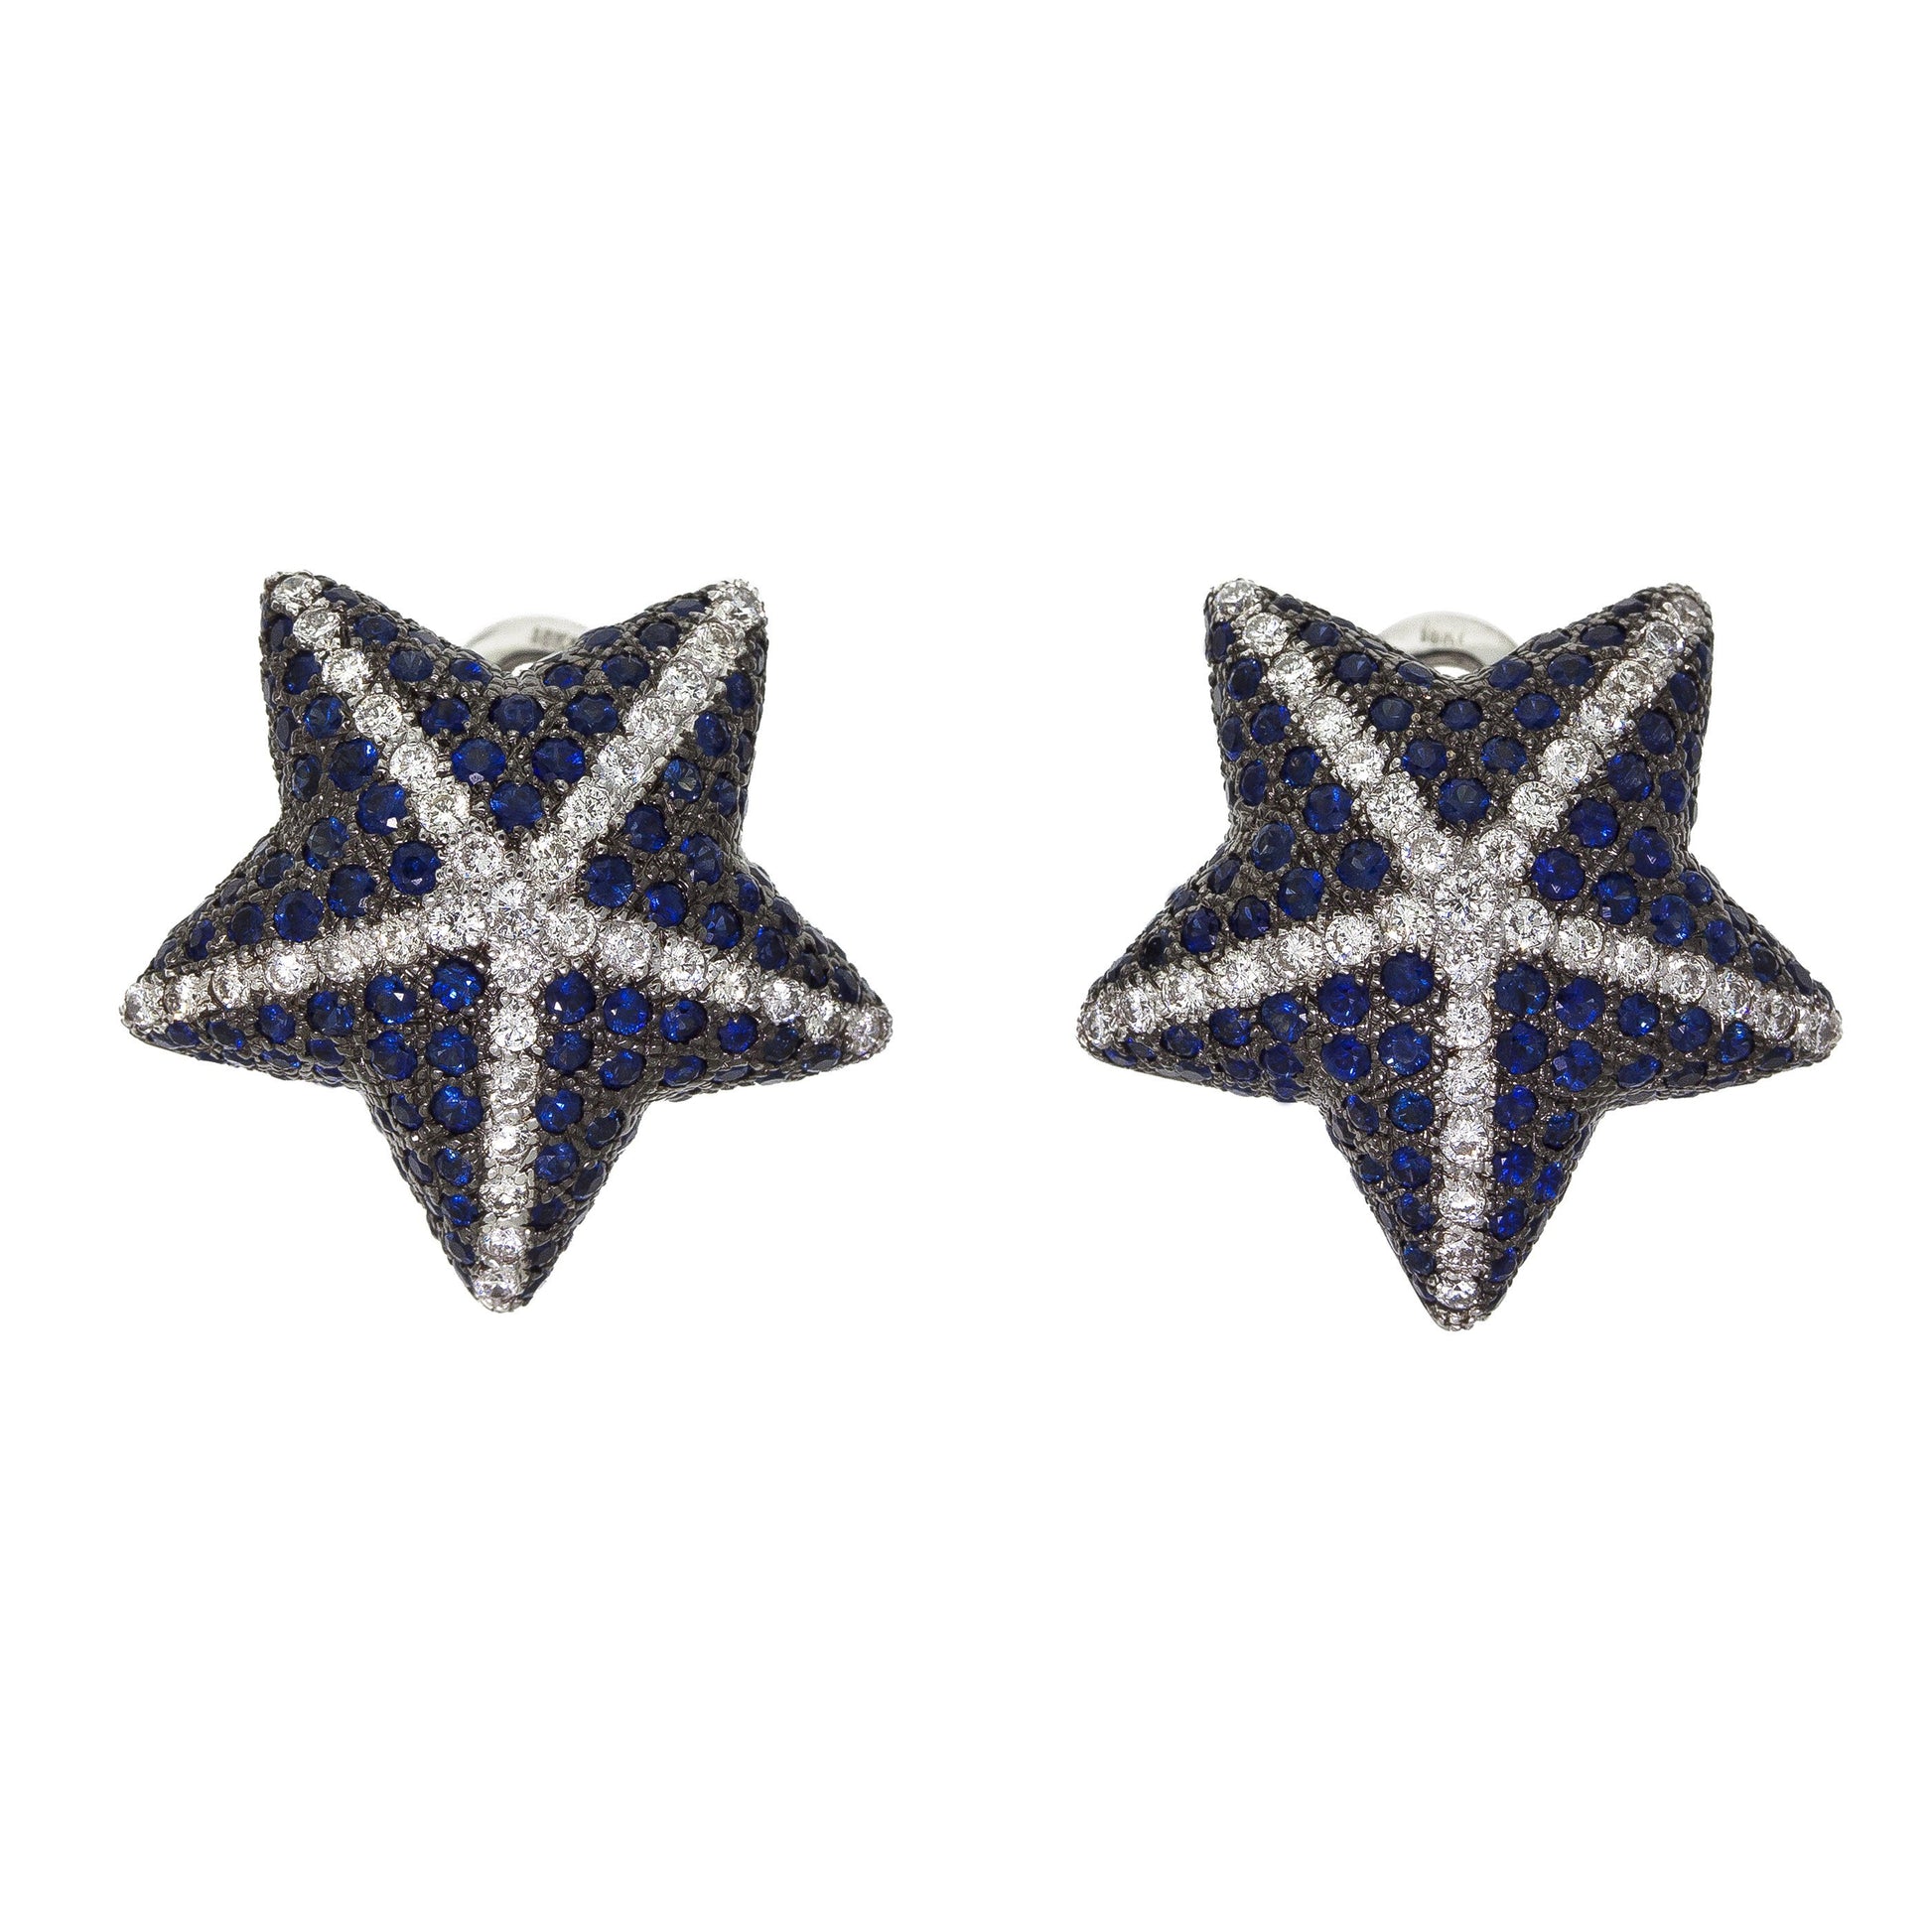  Star Sapphire Earrings